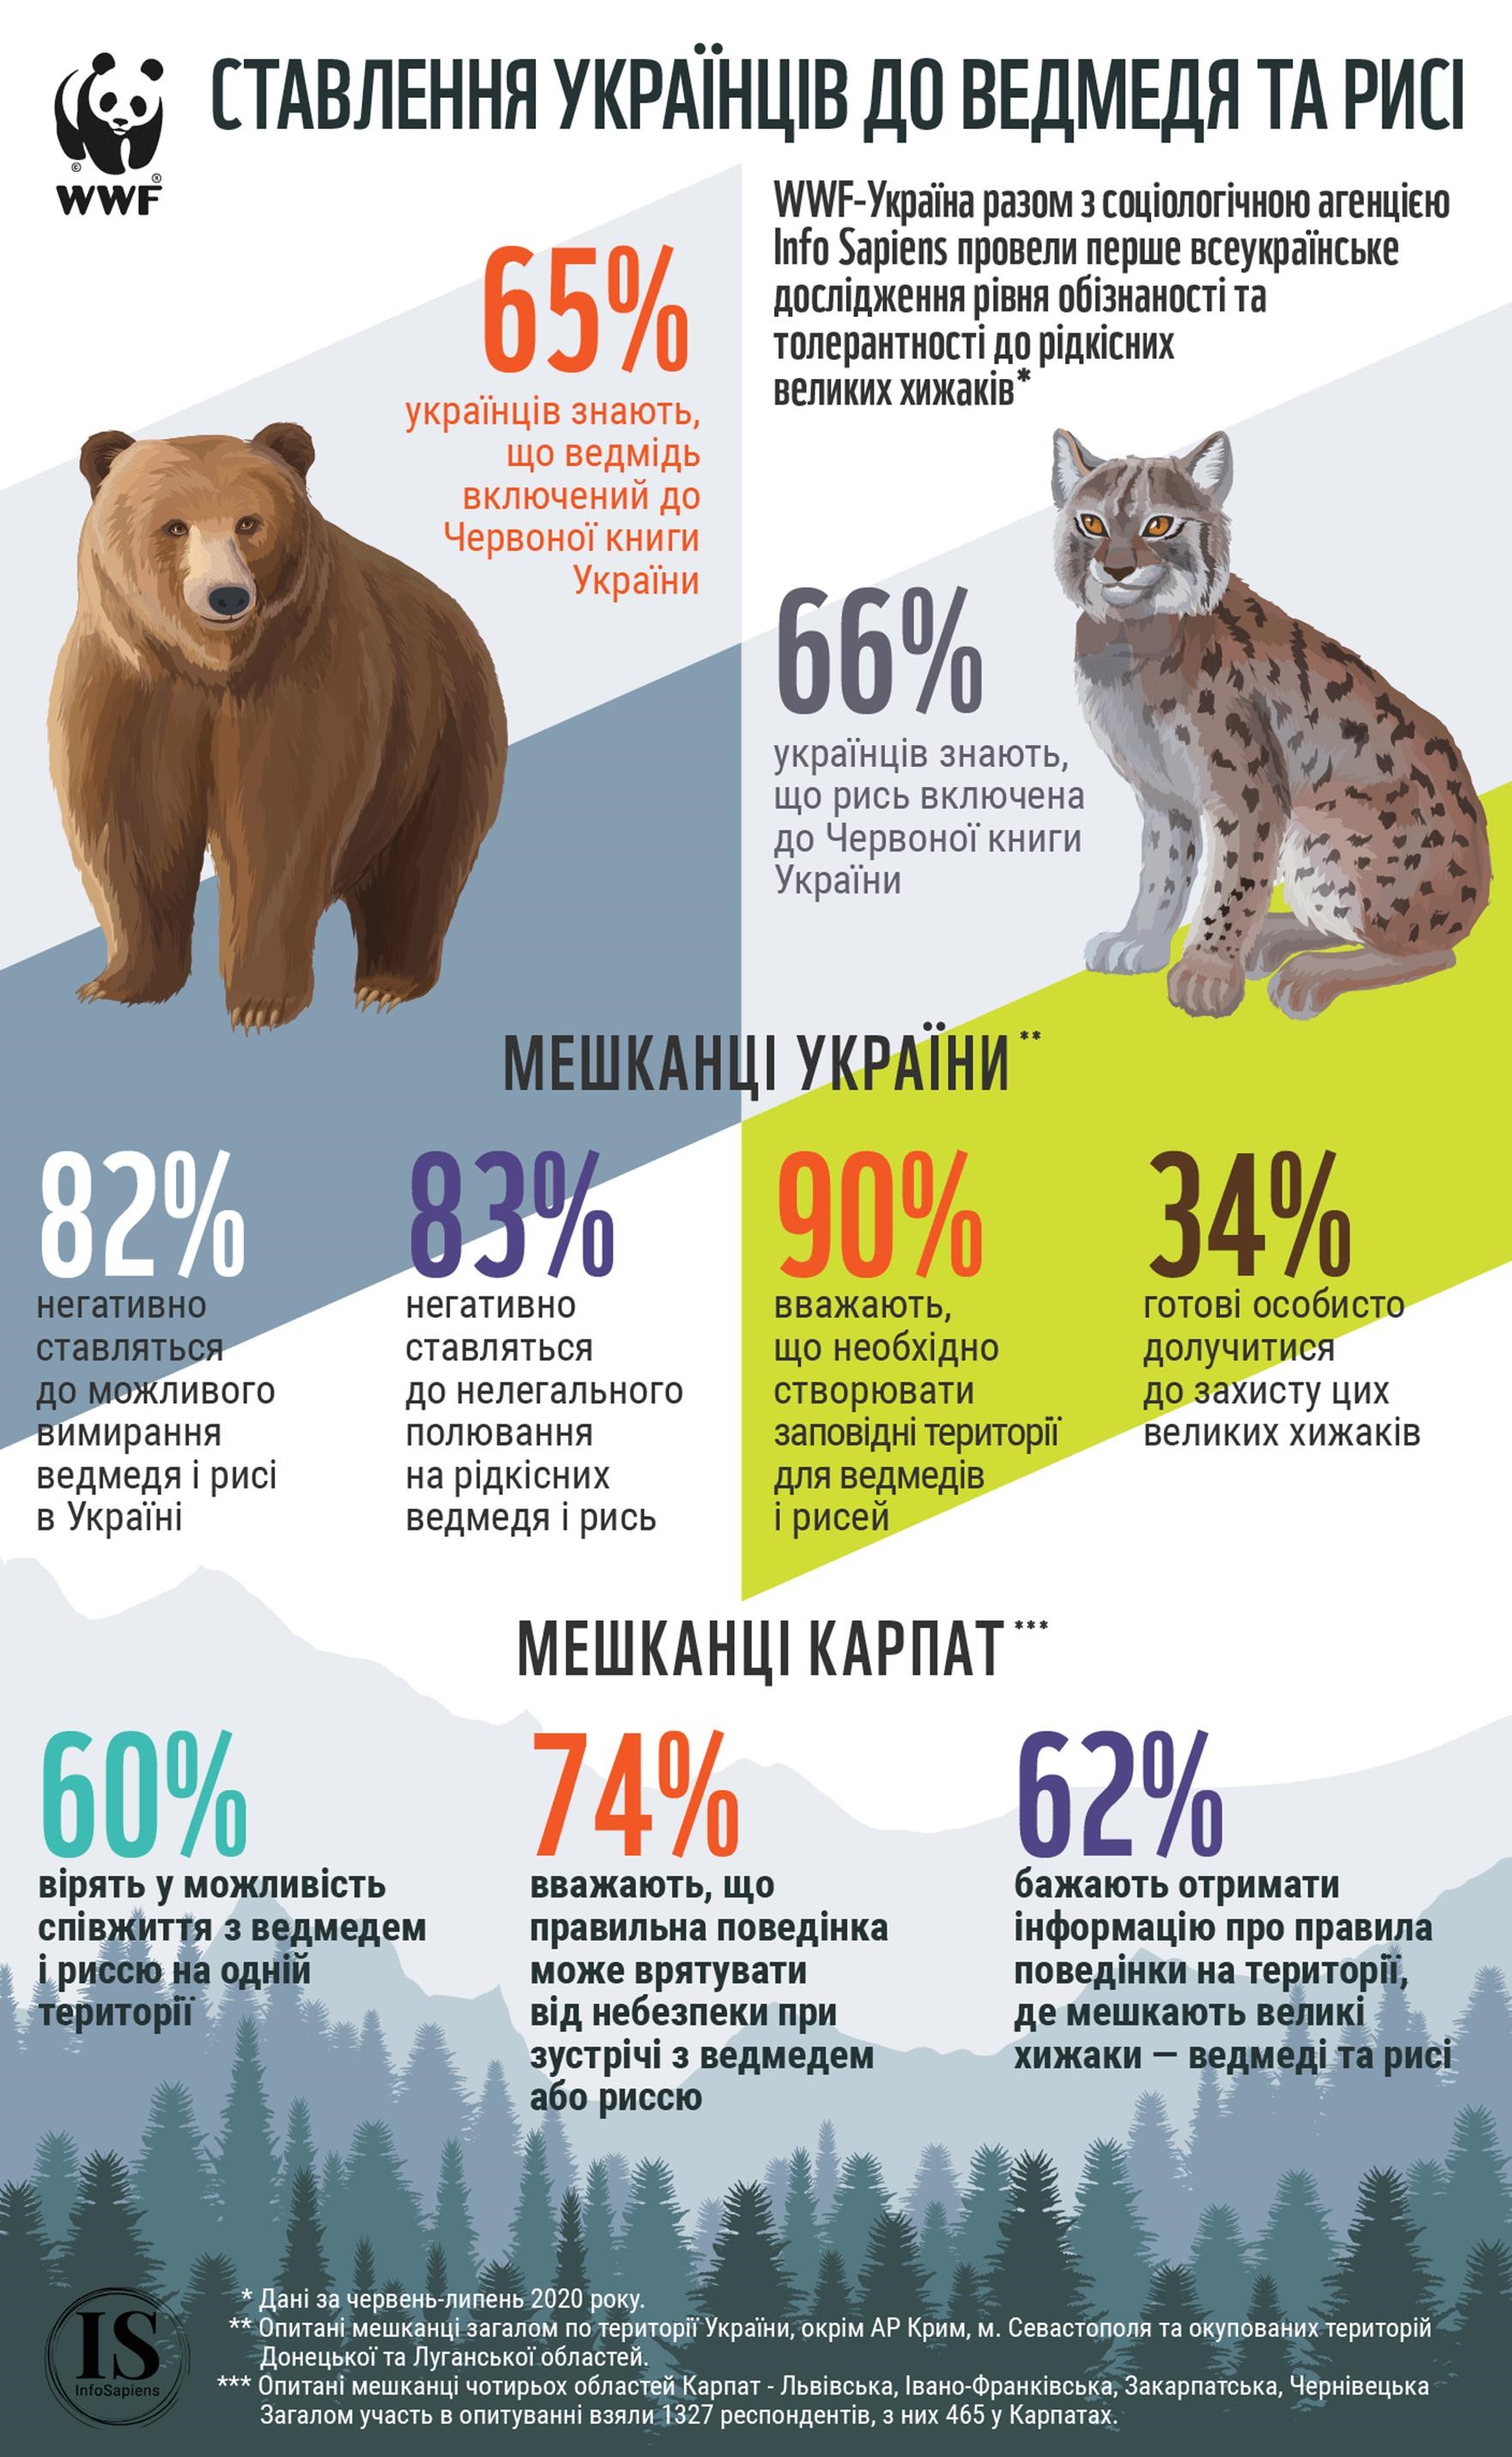 Загальнонаціональне опитування WWF-Україна